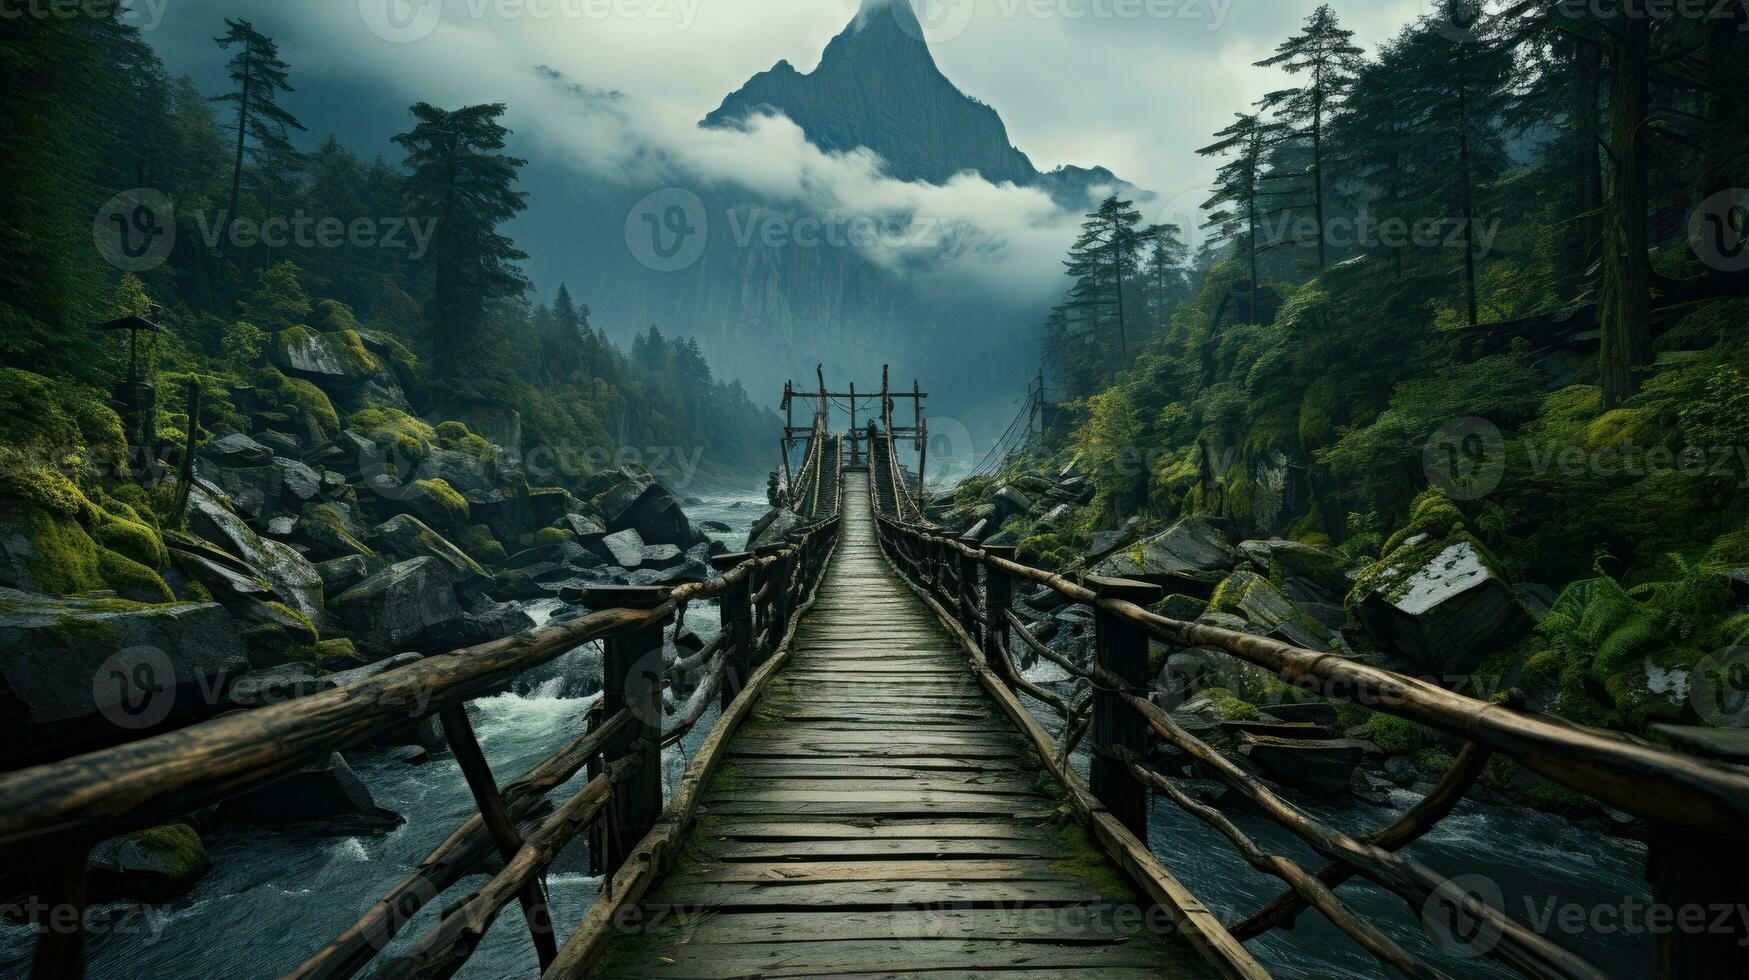 ponte montanhas névoa temperamental pacífico panorama liberdade cena lindo natureza papel de parede foto